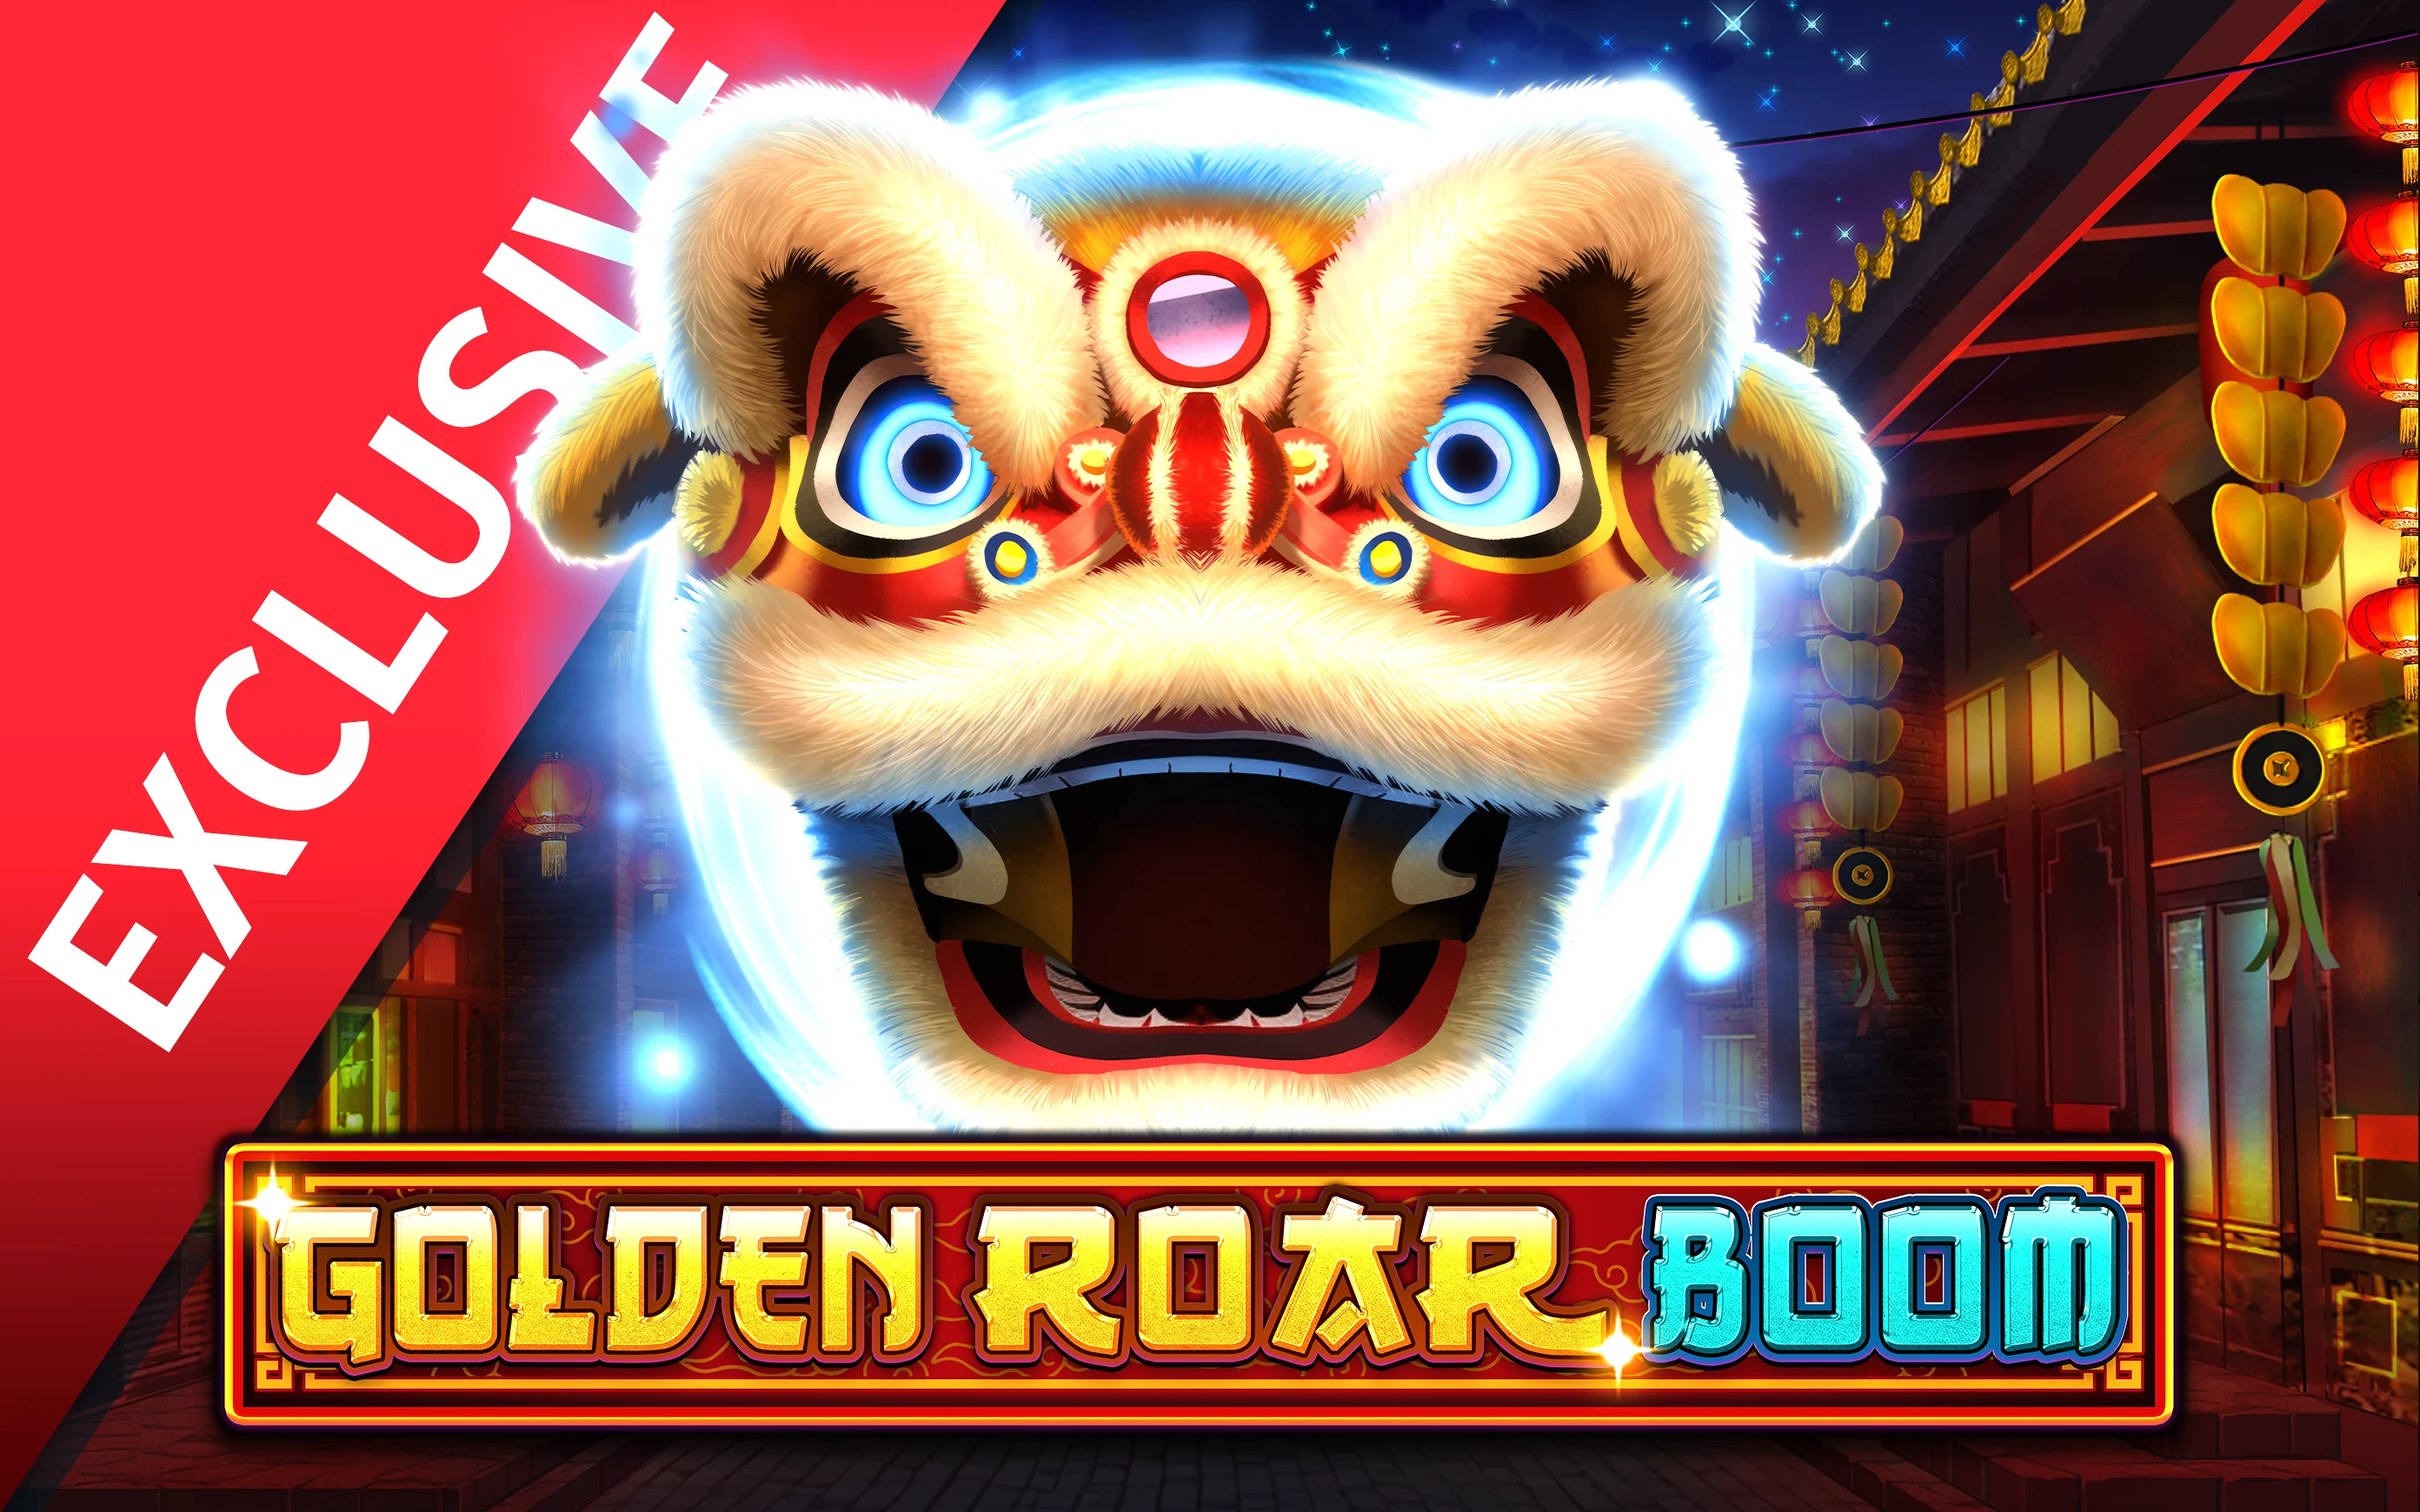 Zagraj w Golden Roar BOOM w kasynie online Starcasino.be